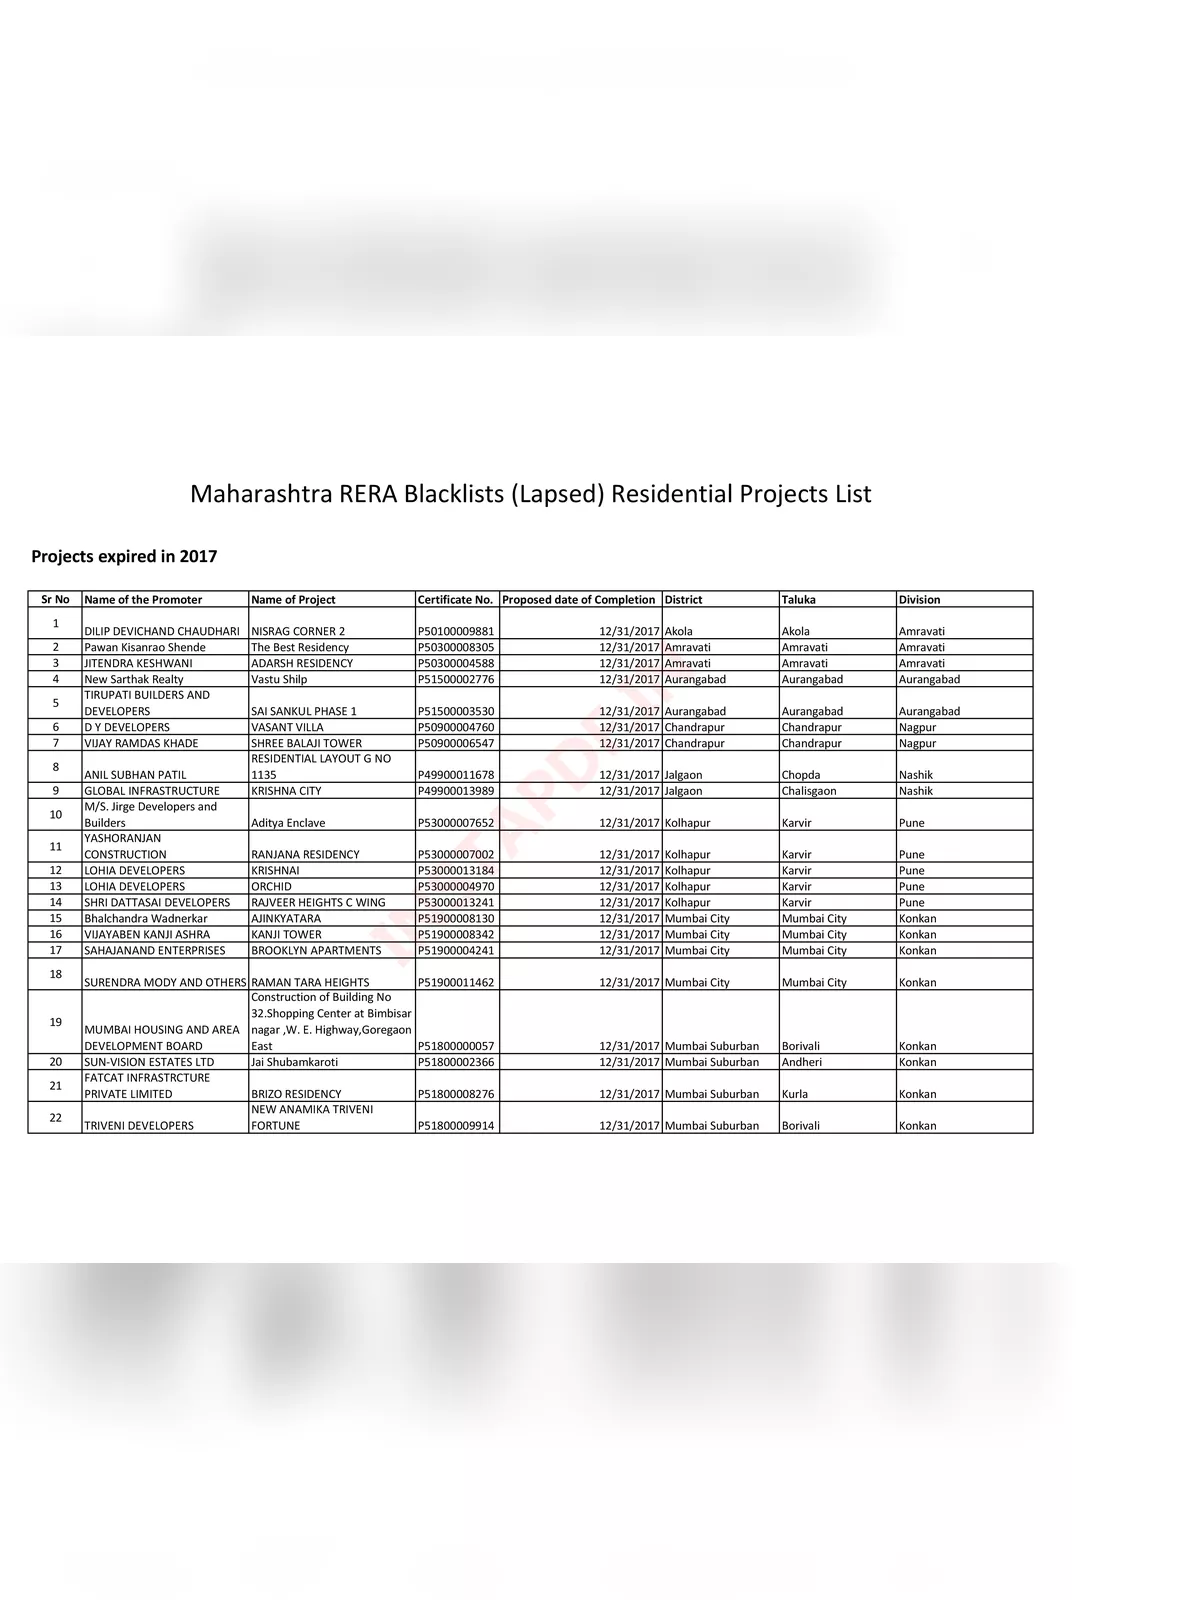 Maharashtra RERA (Maharera) Blacklisted Projects List